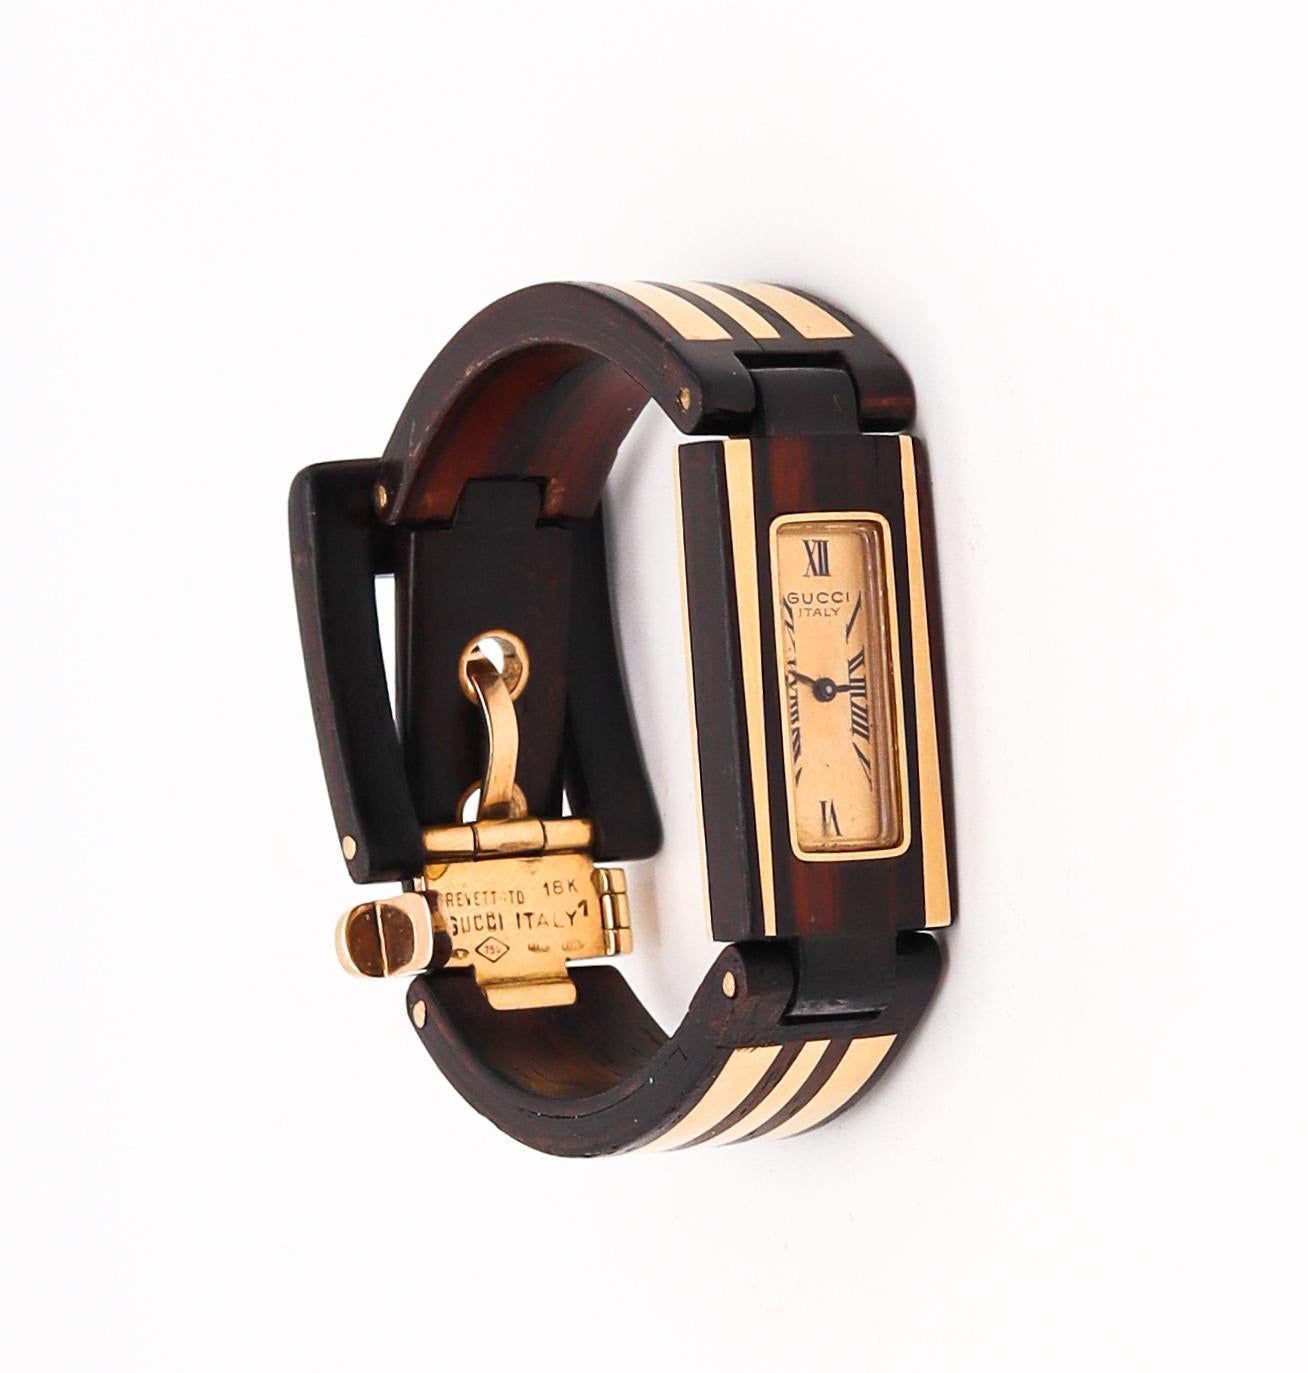 Eine Retro-Uhr für das Handgelenk, entworfen von Gucci Frankreich.

Ein äußerst seltenes Stück, das 1968 in Paris vom Haus Gucci entworfen wurde. Diese ungewöhnliche Armbanduhr mit Schnalle wurde sorgfältig aus natürlichem Makassar-Ebenholz